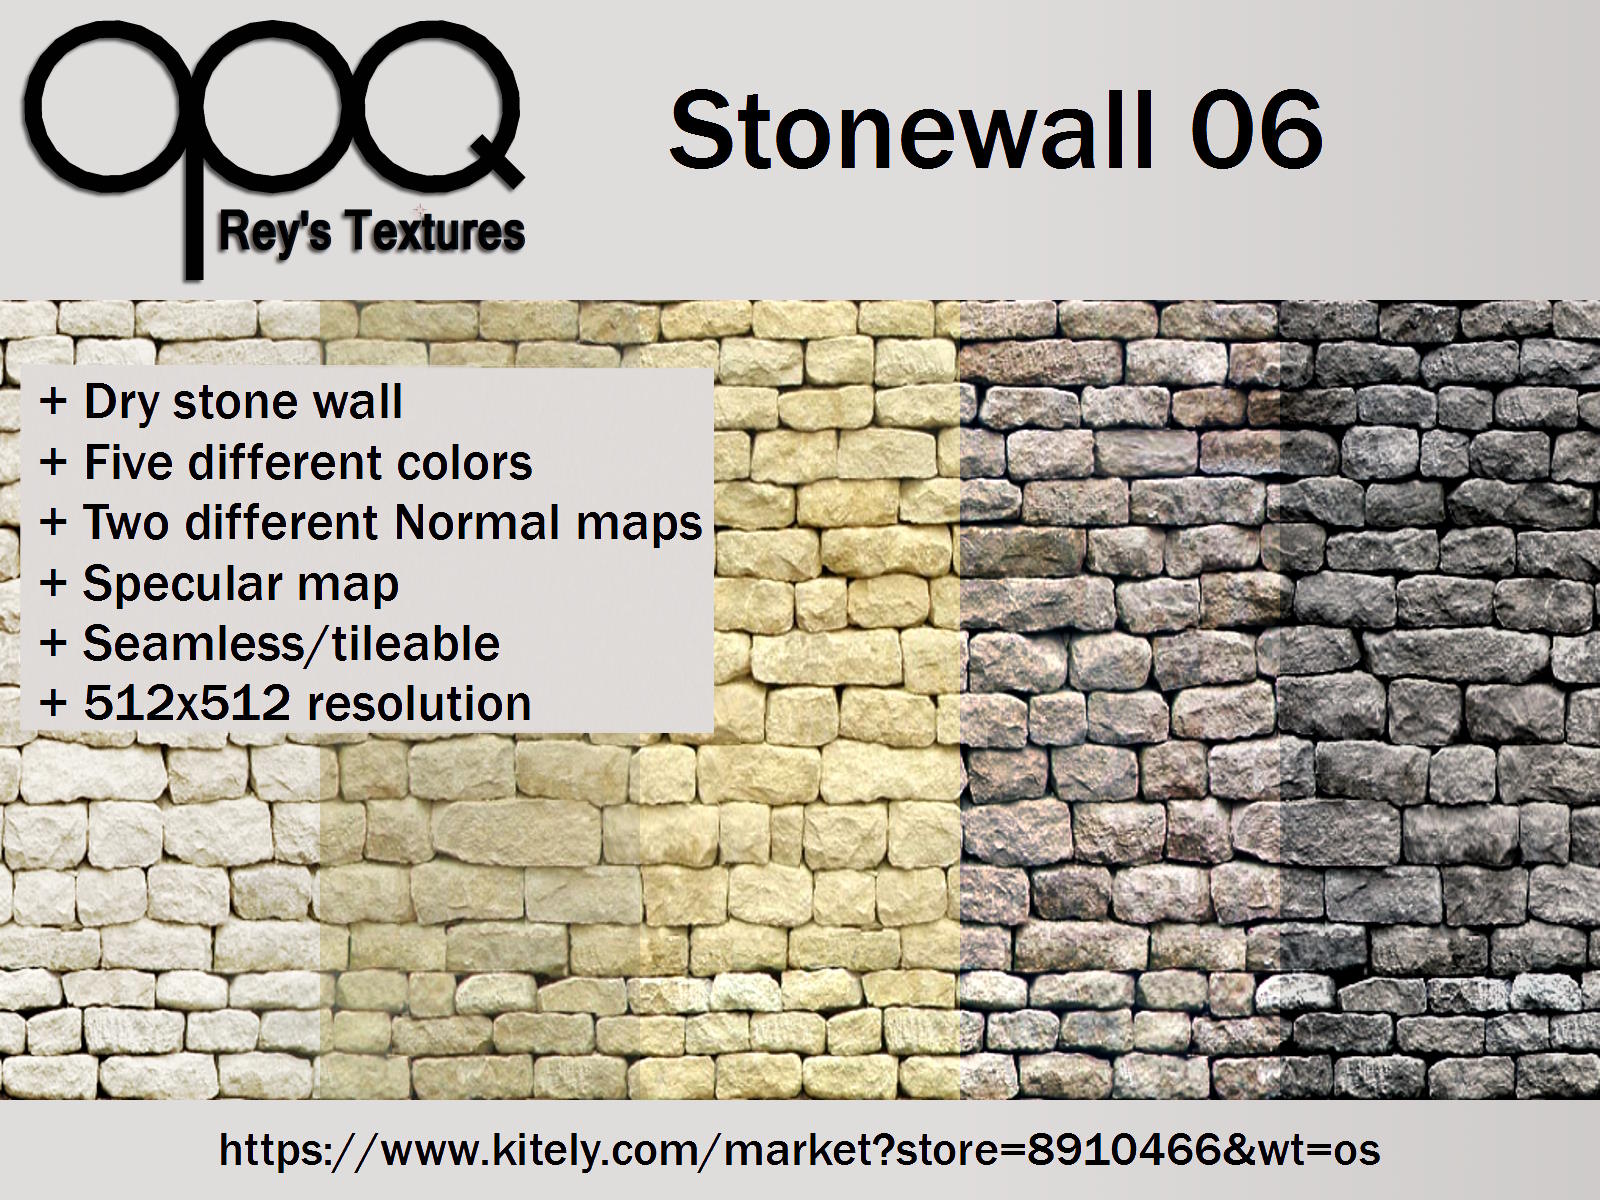 Rey's Stonewall 06 Poster Kitely.jpg